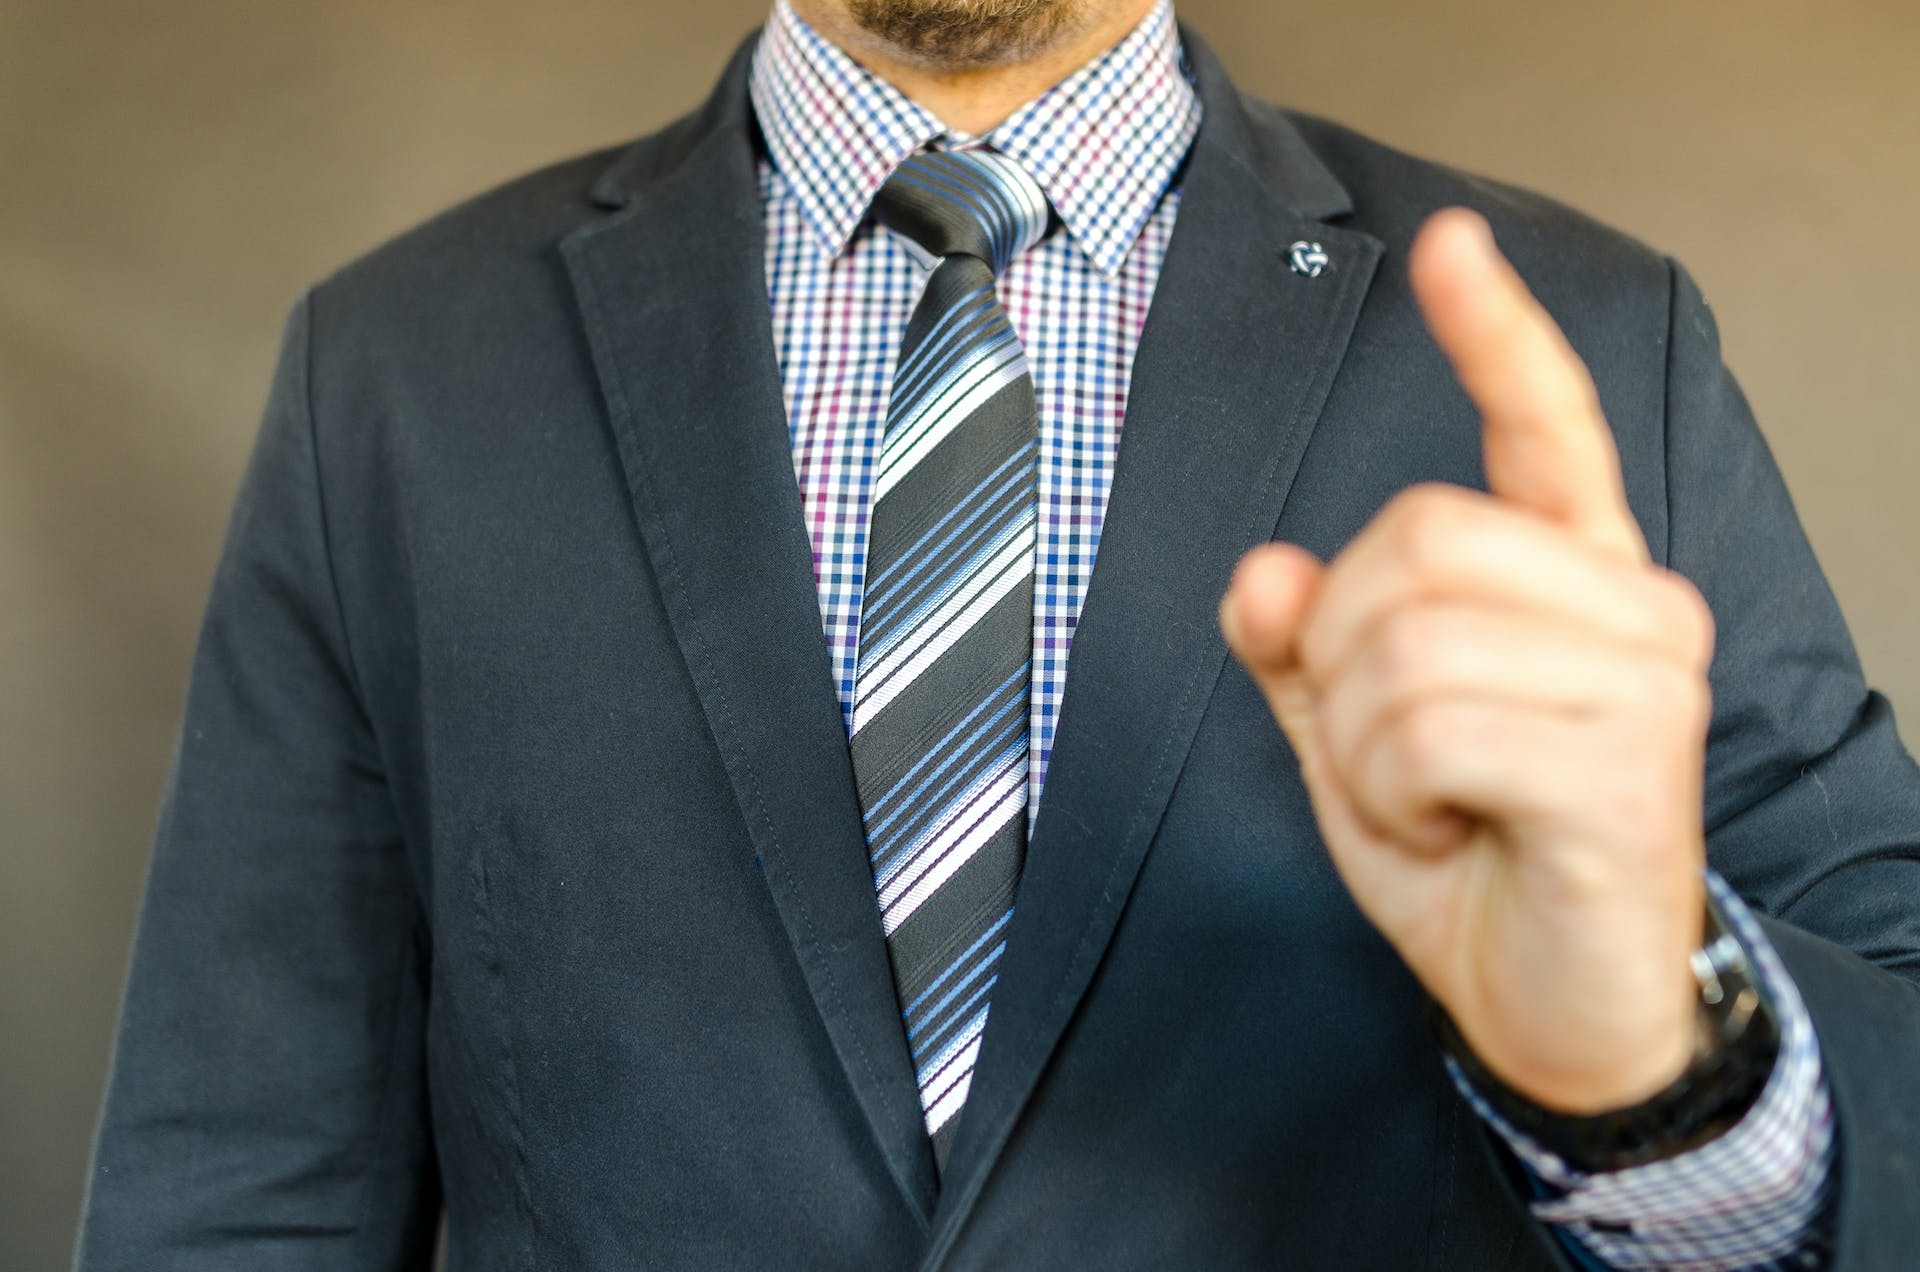 Mann im Anzug zeigt mit dem Finger | Quelle: Pexels